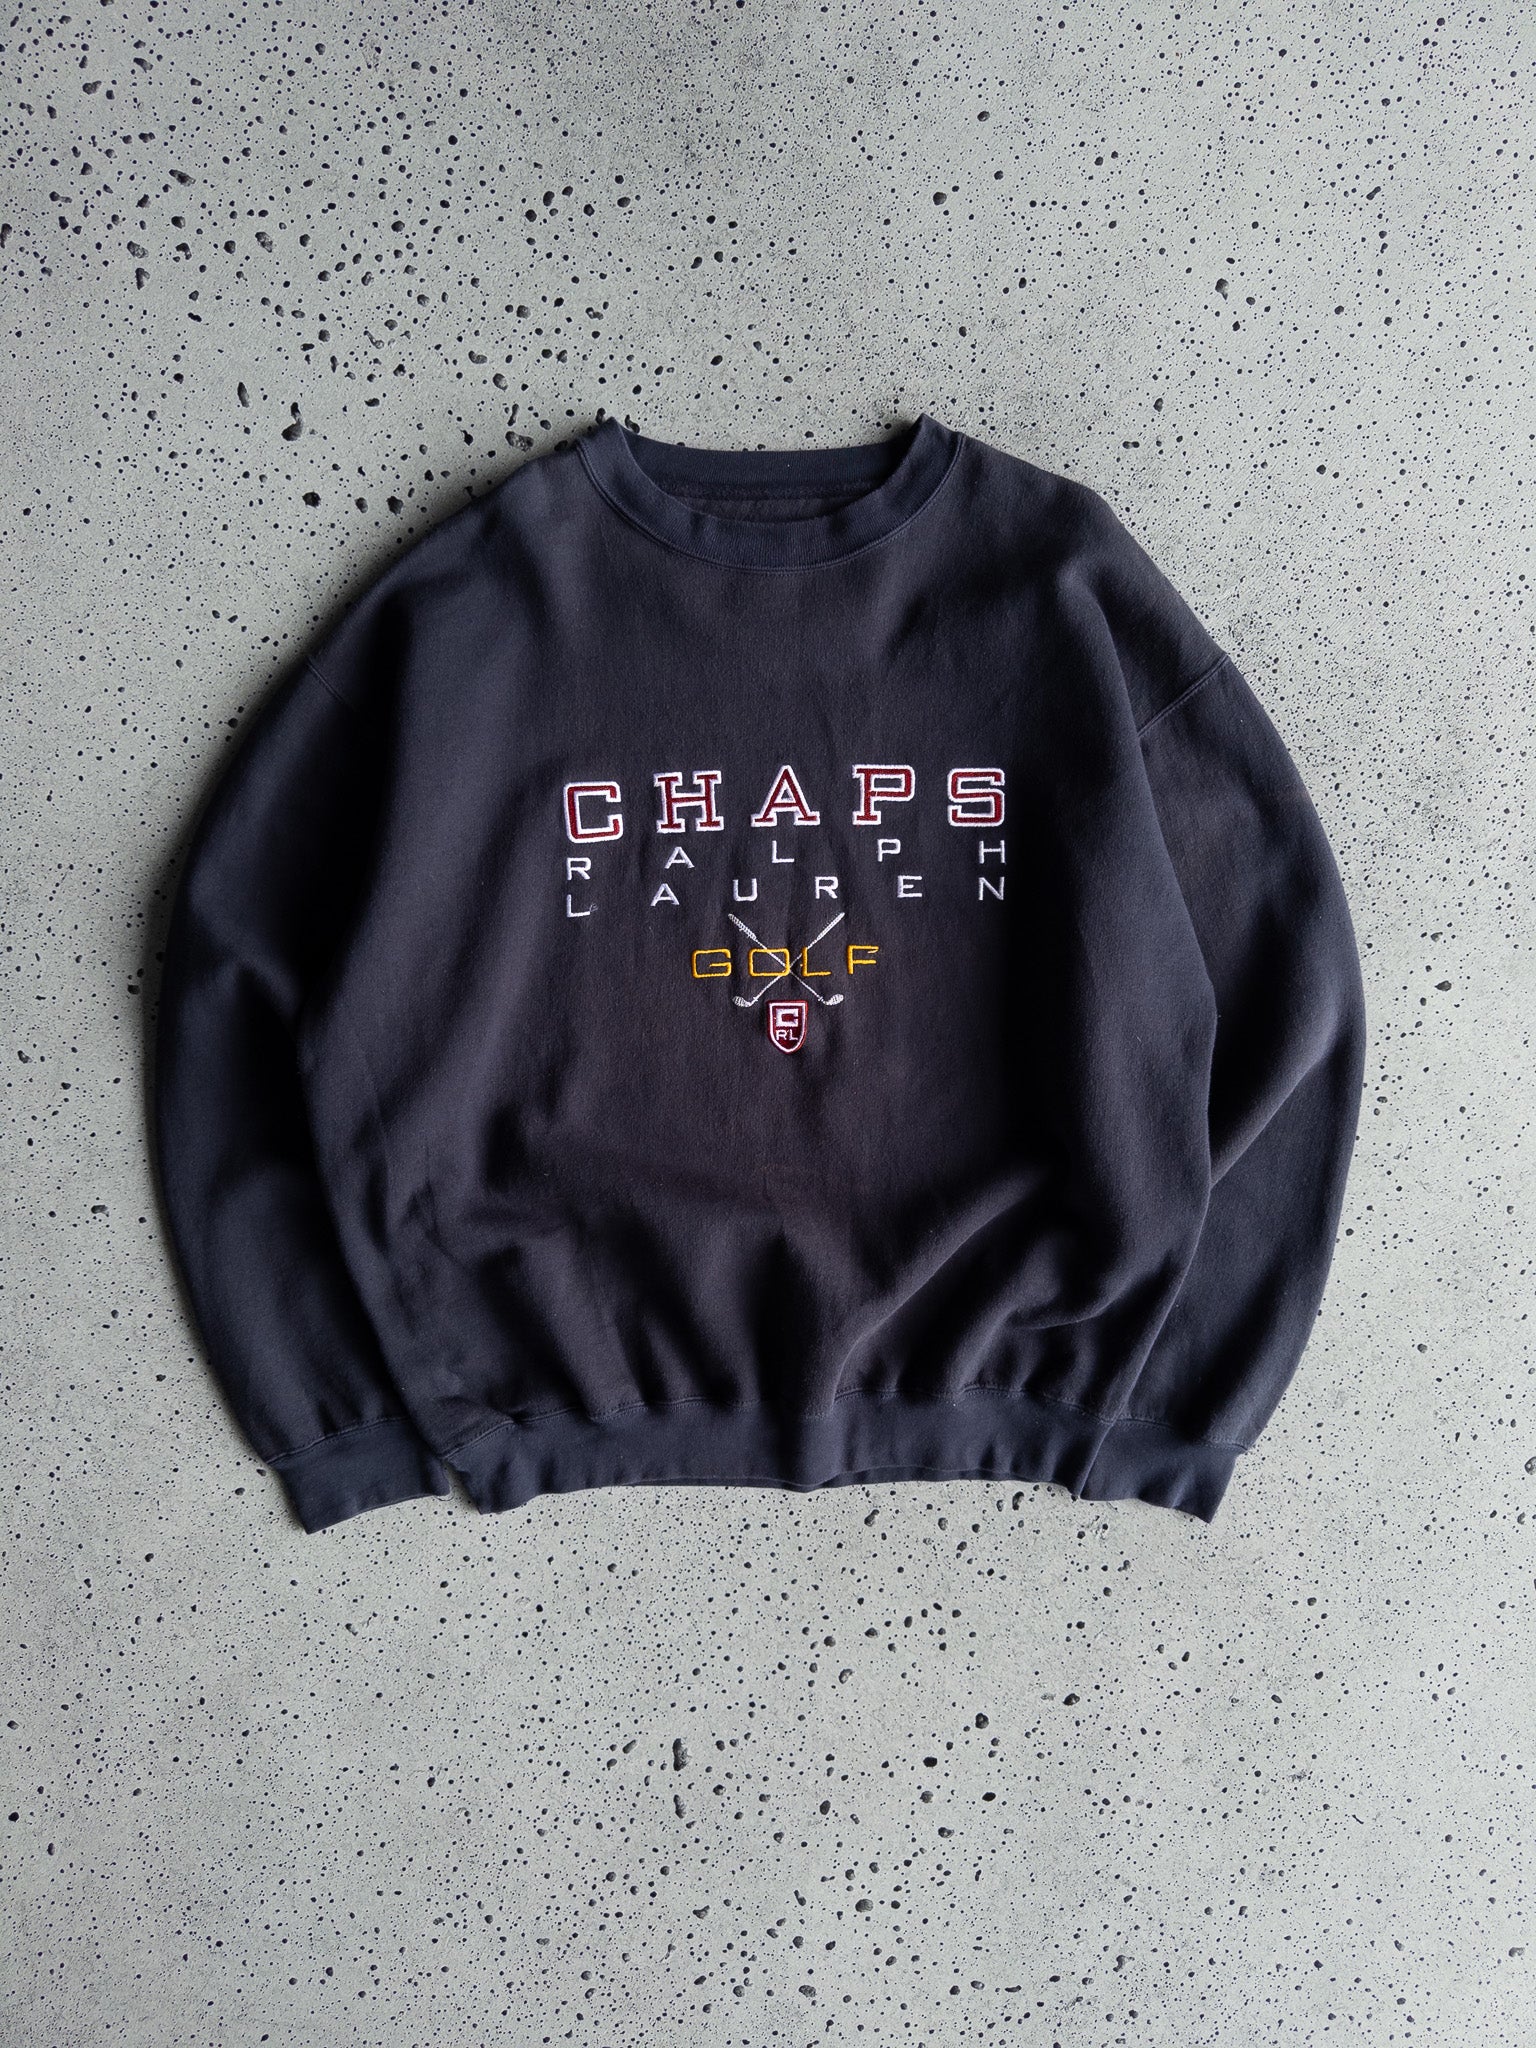 Vintage Chaps Ralph Lauren Golf Sweatshirt (L)